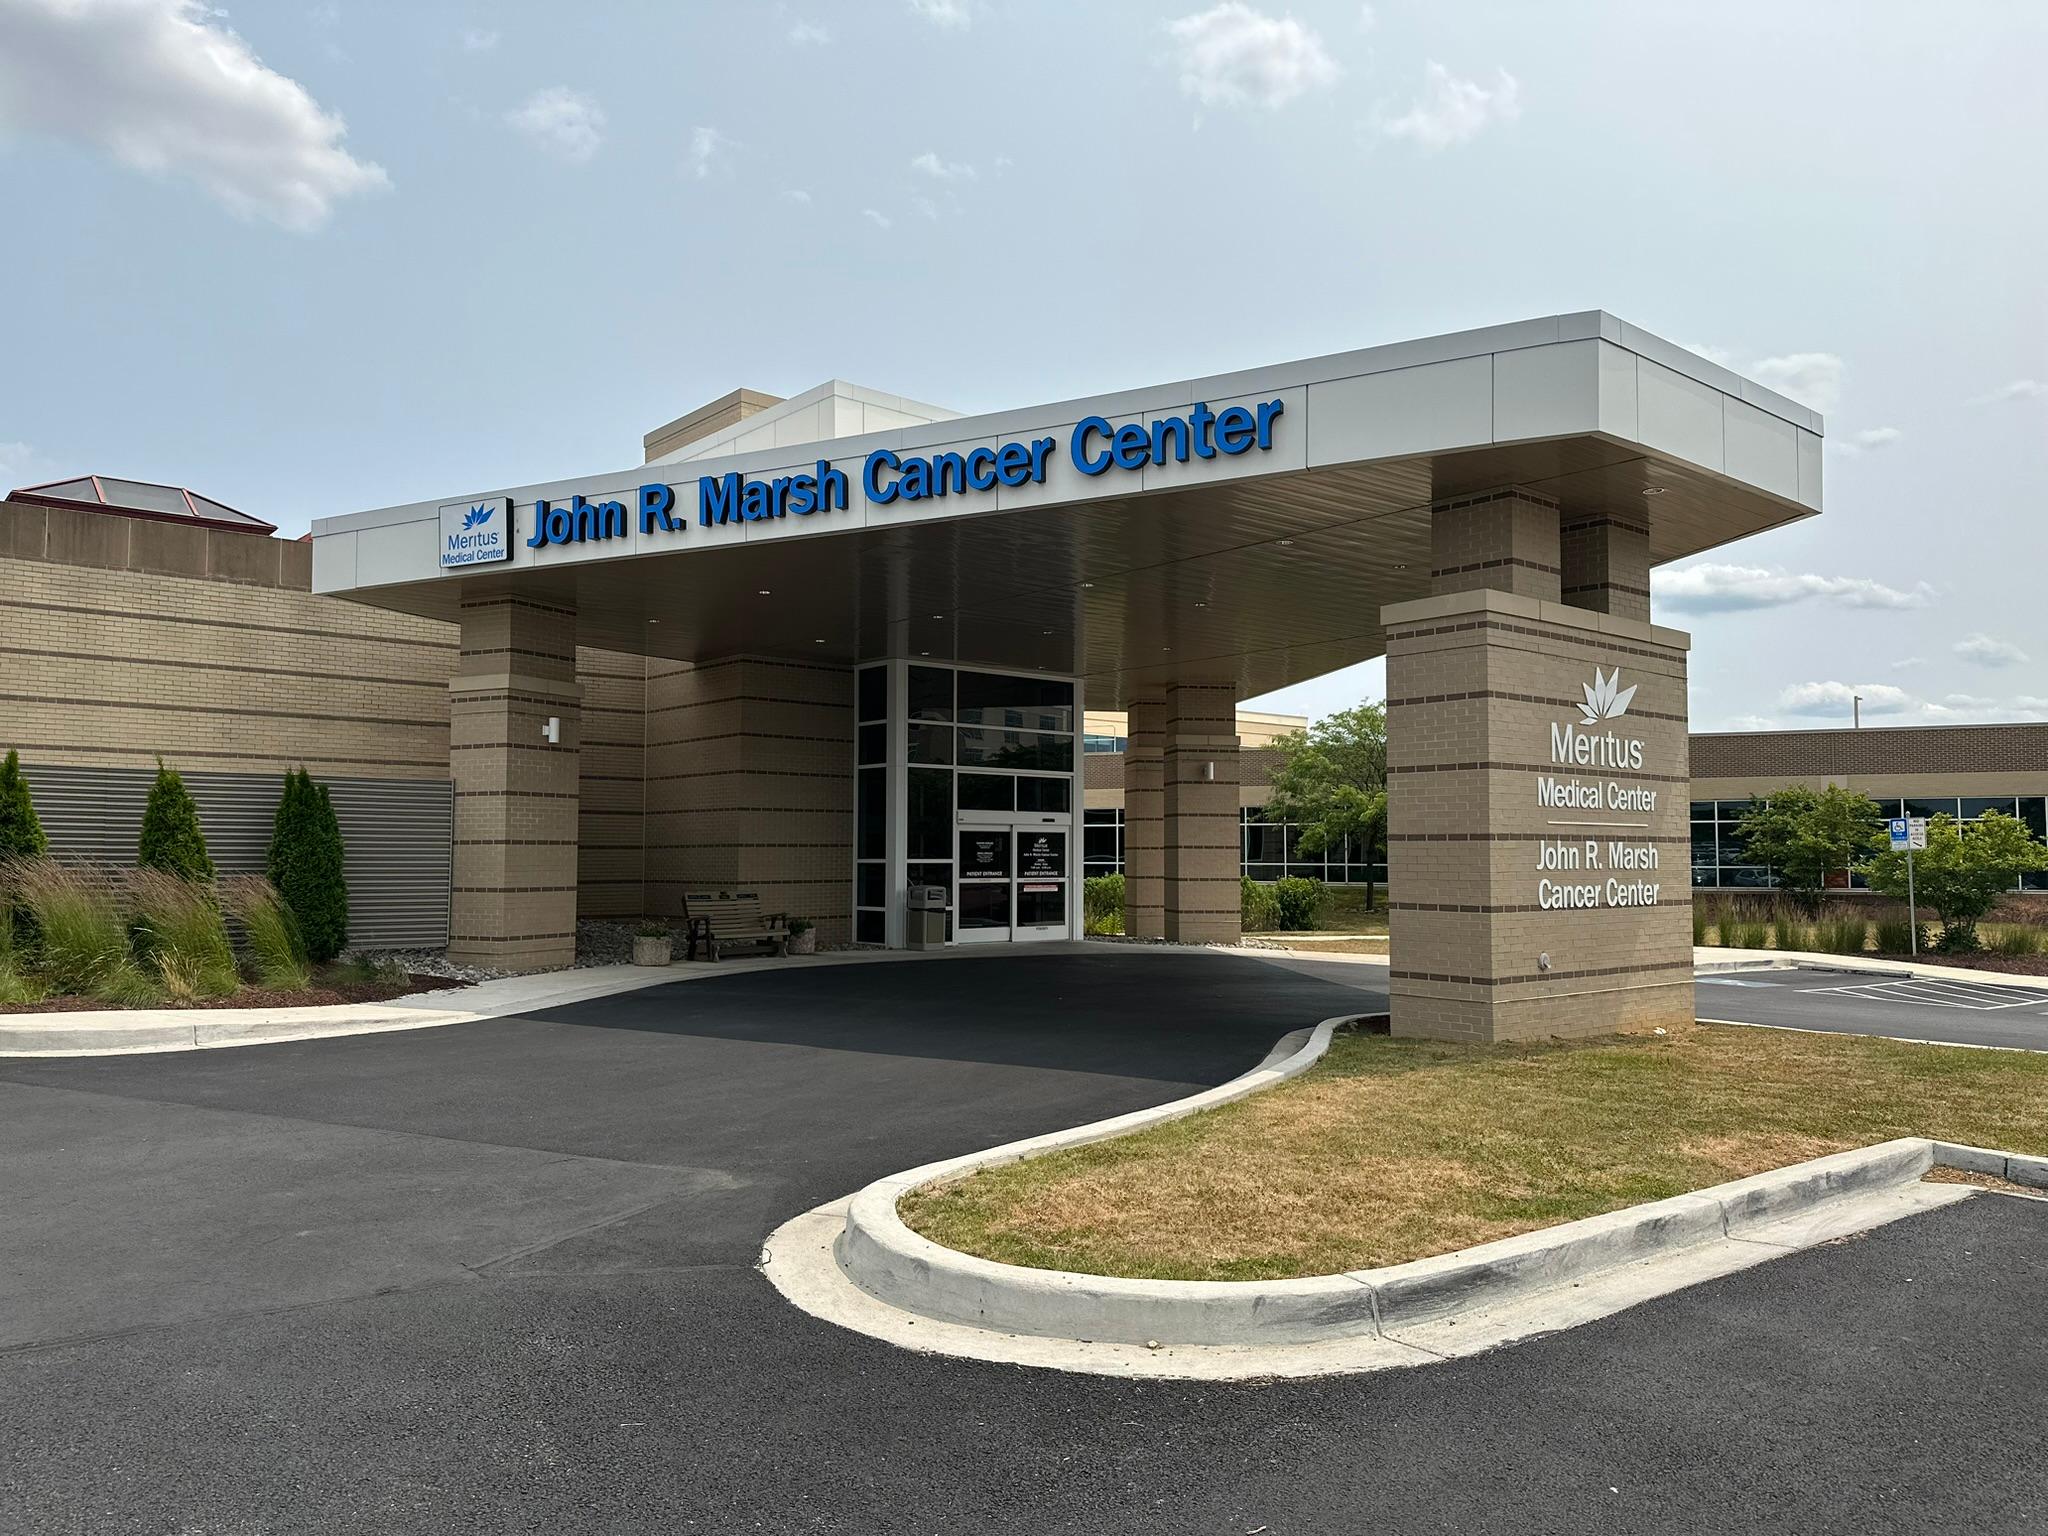 John R. Marsh Cancer Center 